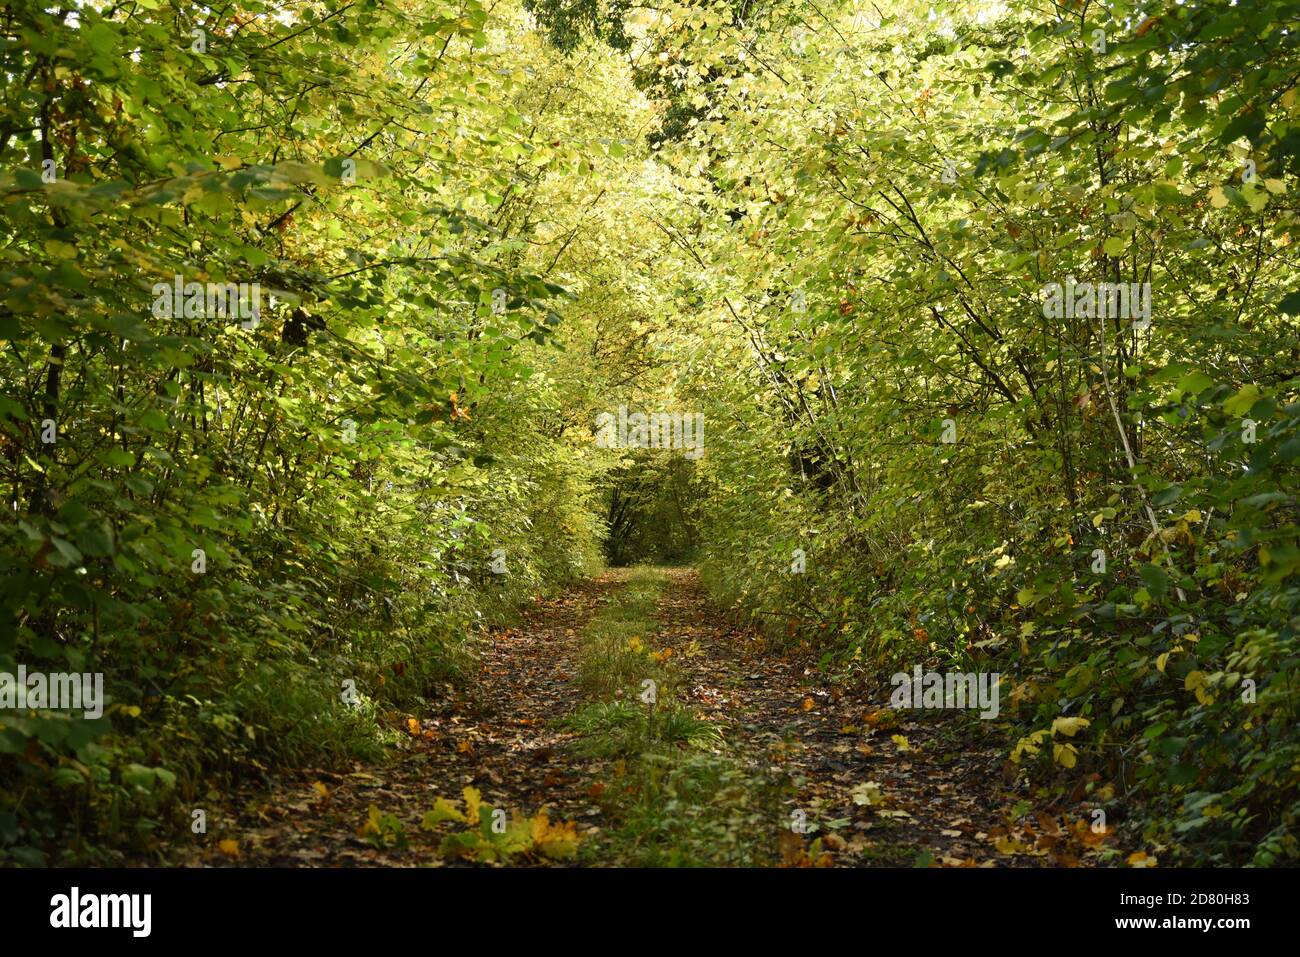 Path through autumn leaves Stock Photo